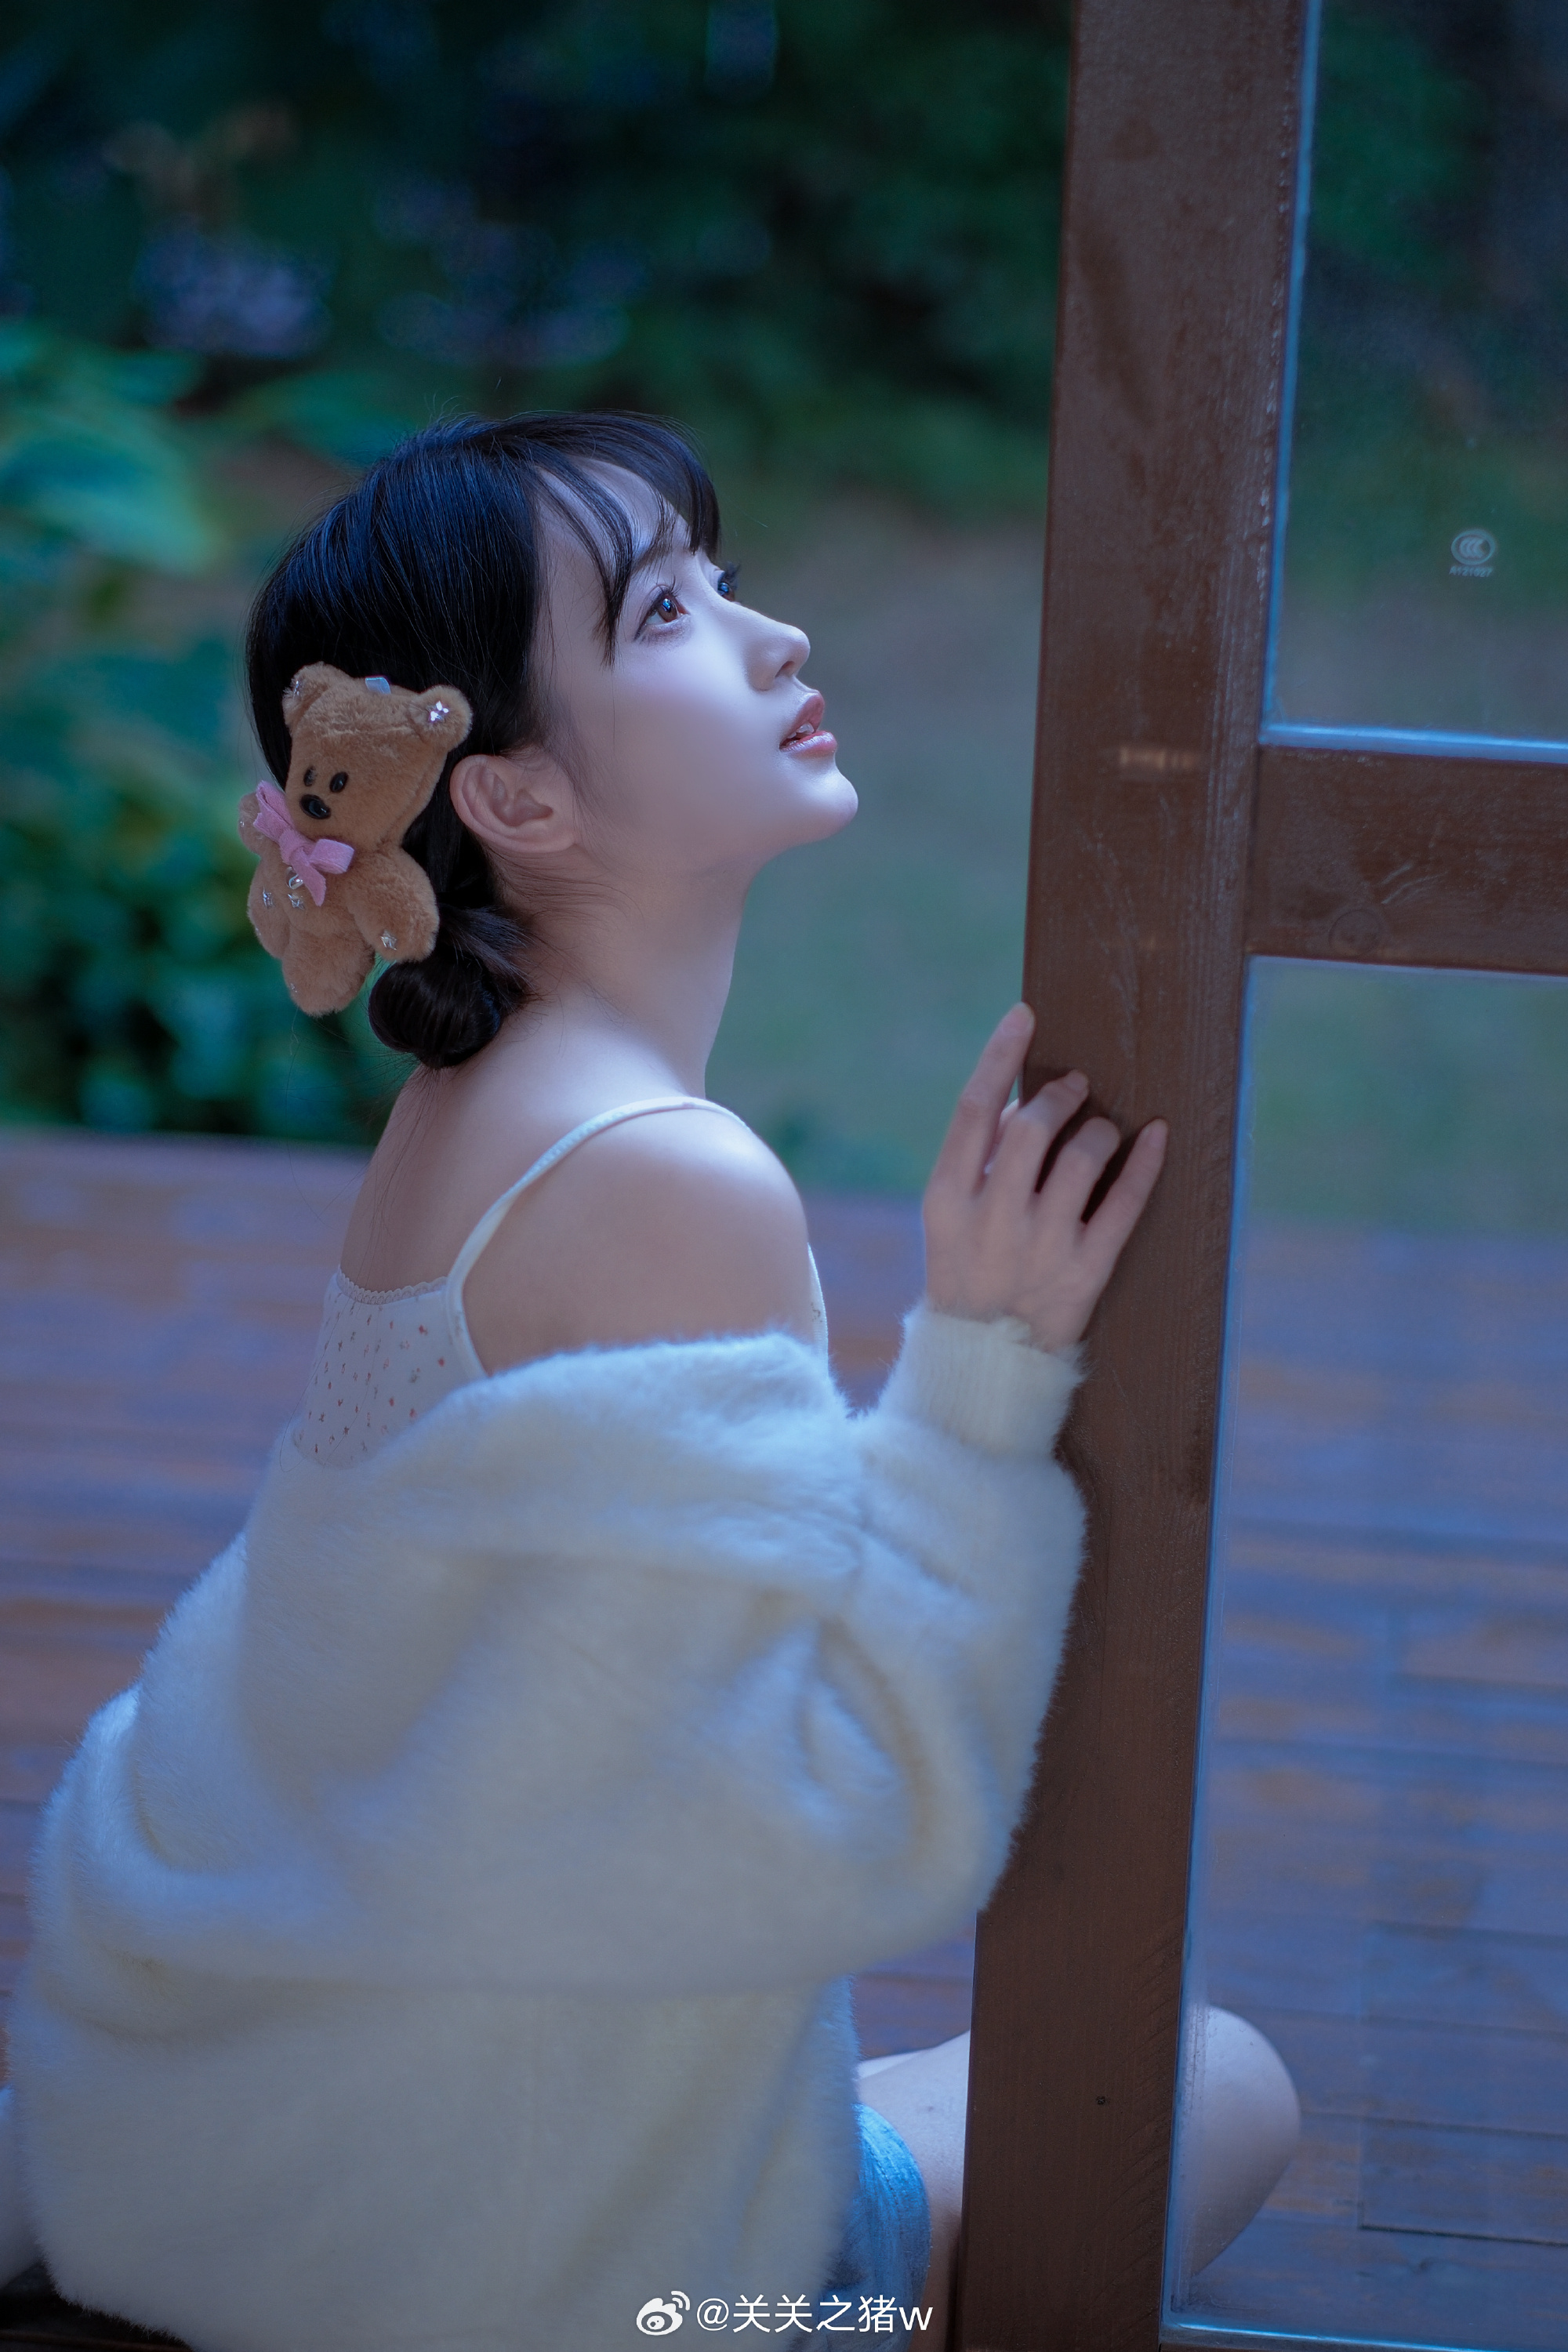 少女写真 冬日 小森林❄️@关关之猪w 摄影-第2张